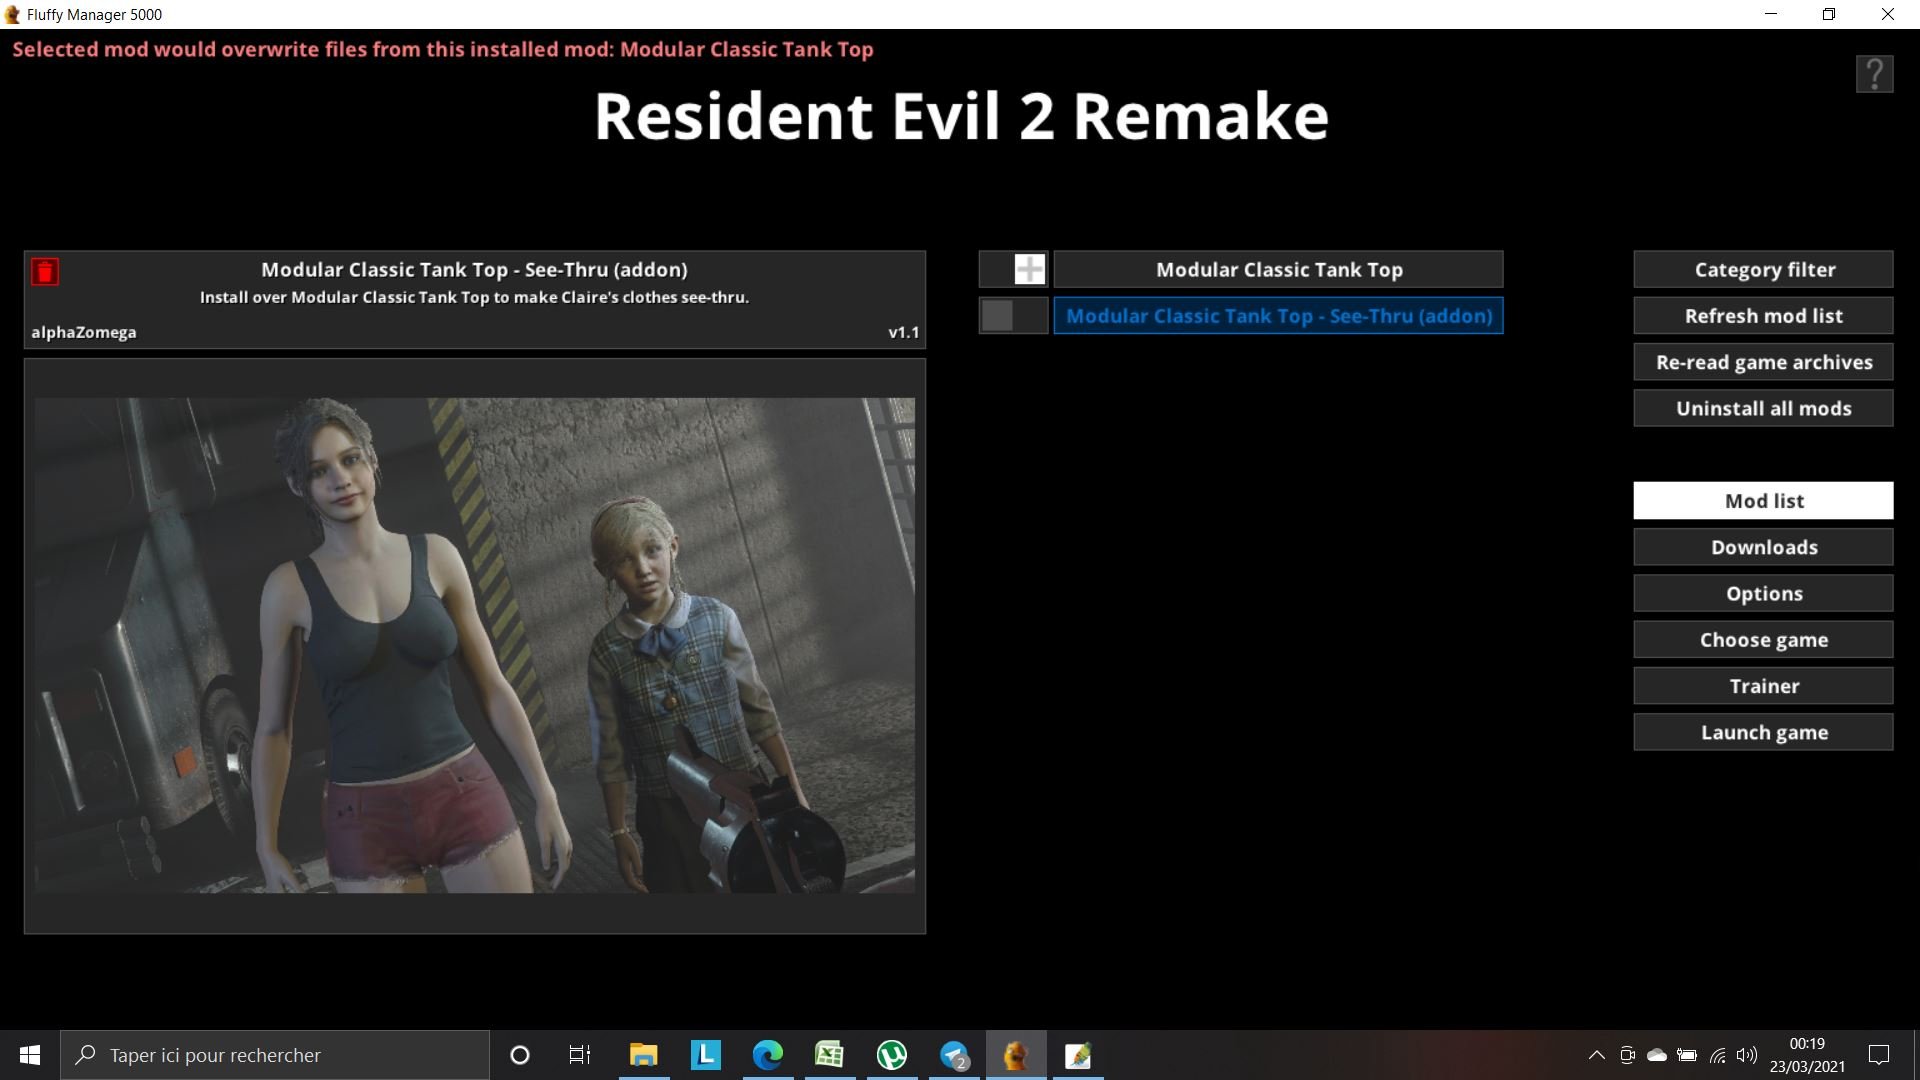 Ultimate Trainer for Resident Evil 2 Remake Mod - Download